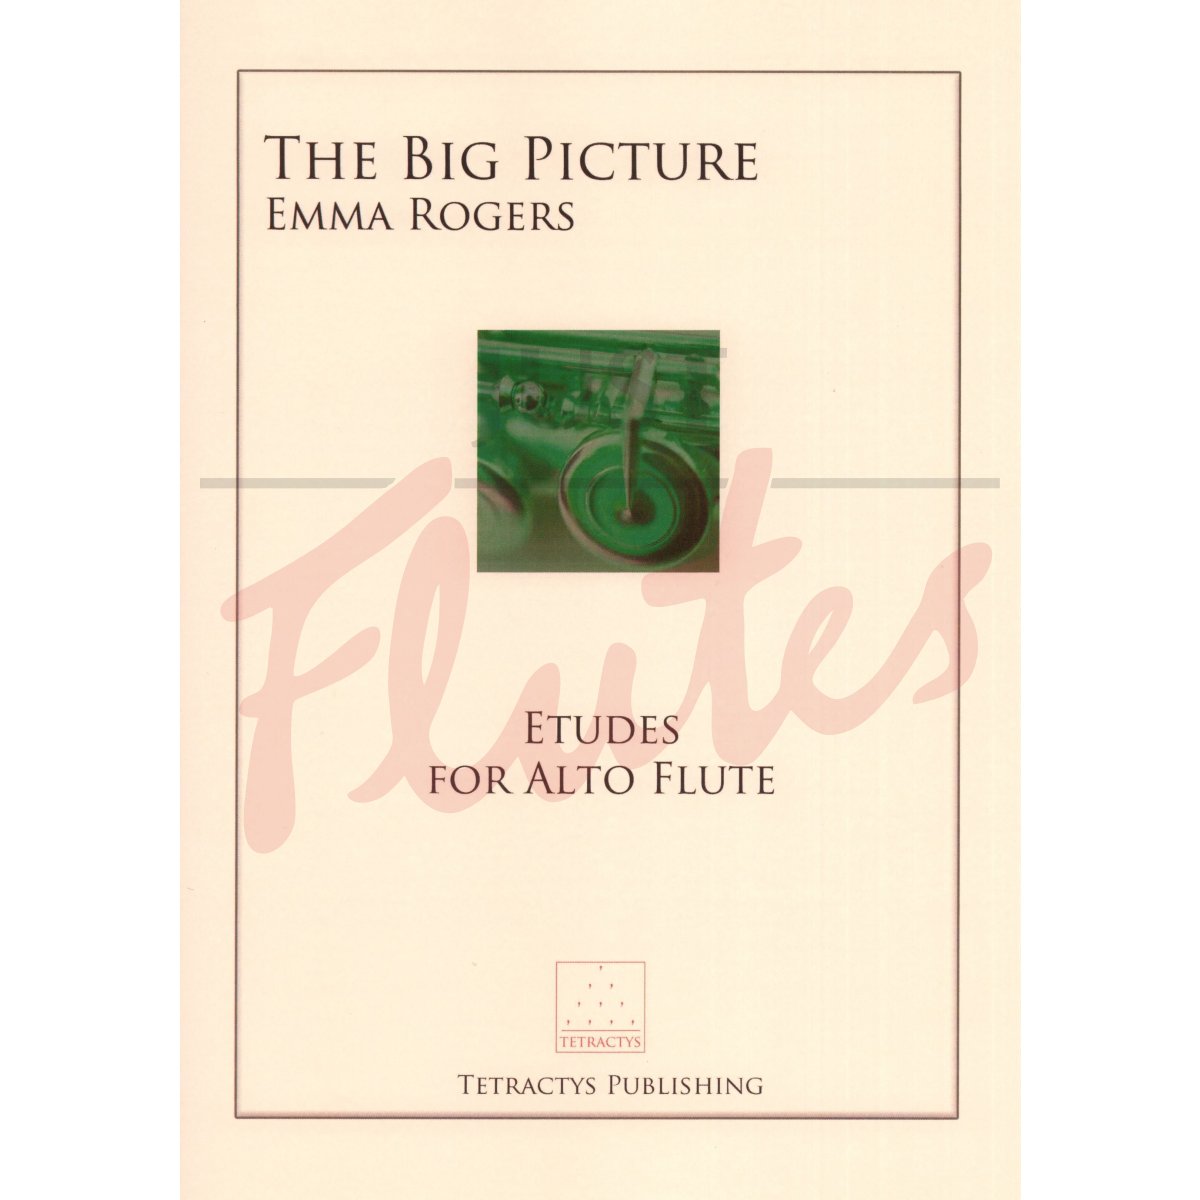 The Big Picture: Etudes for Alto Flute